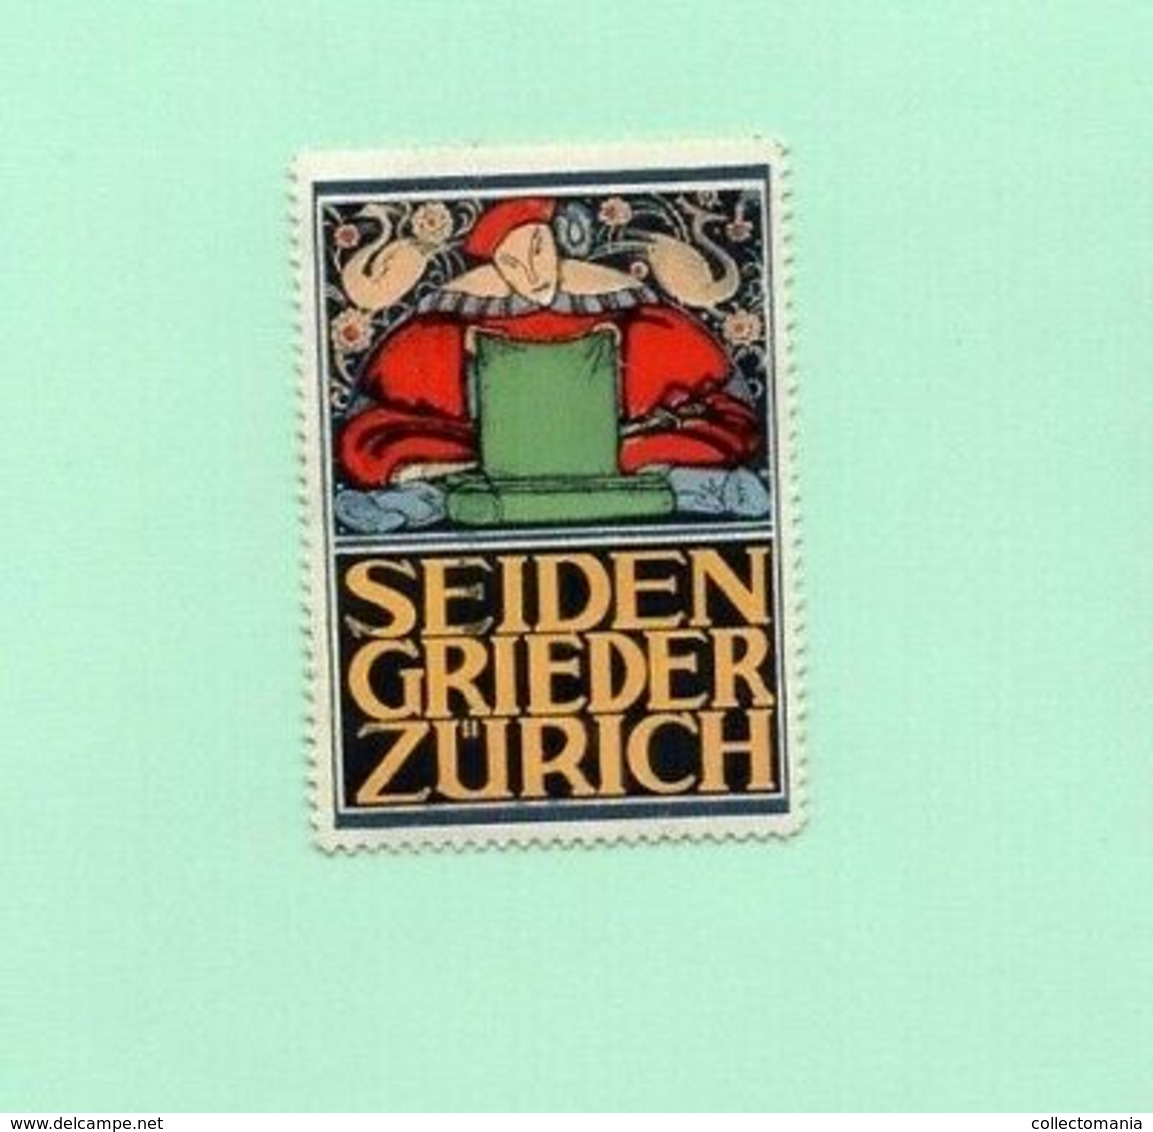 6 Poster Stamps Suisse Switserland Zürich Pflegerinnen Schüle Seiden Spinner Theater 1914 Tuberculose  ZURICH Marken - Thermalisme